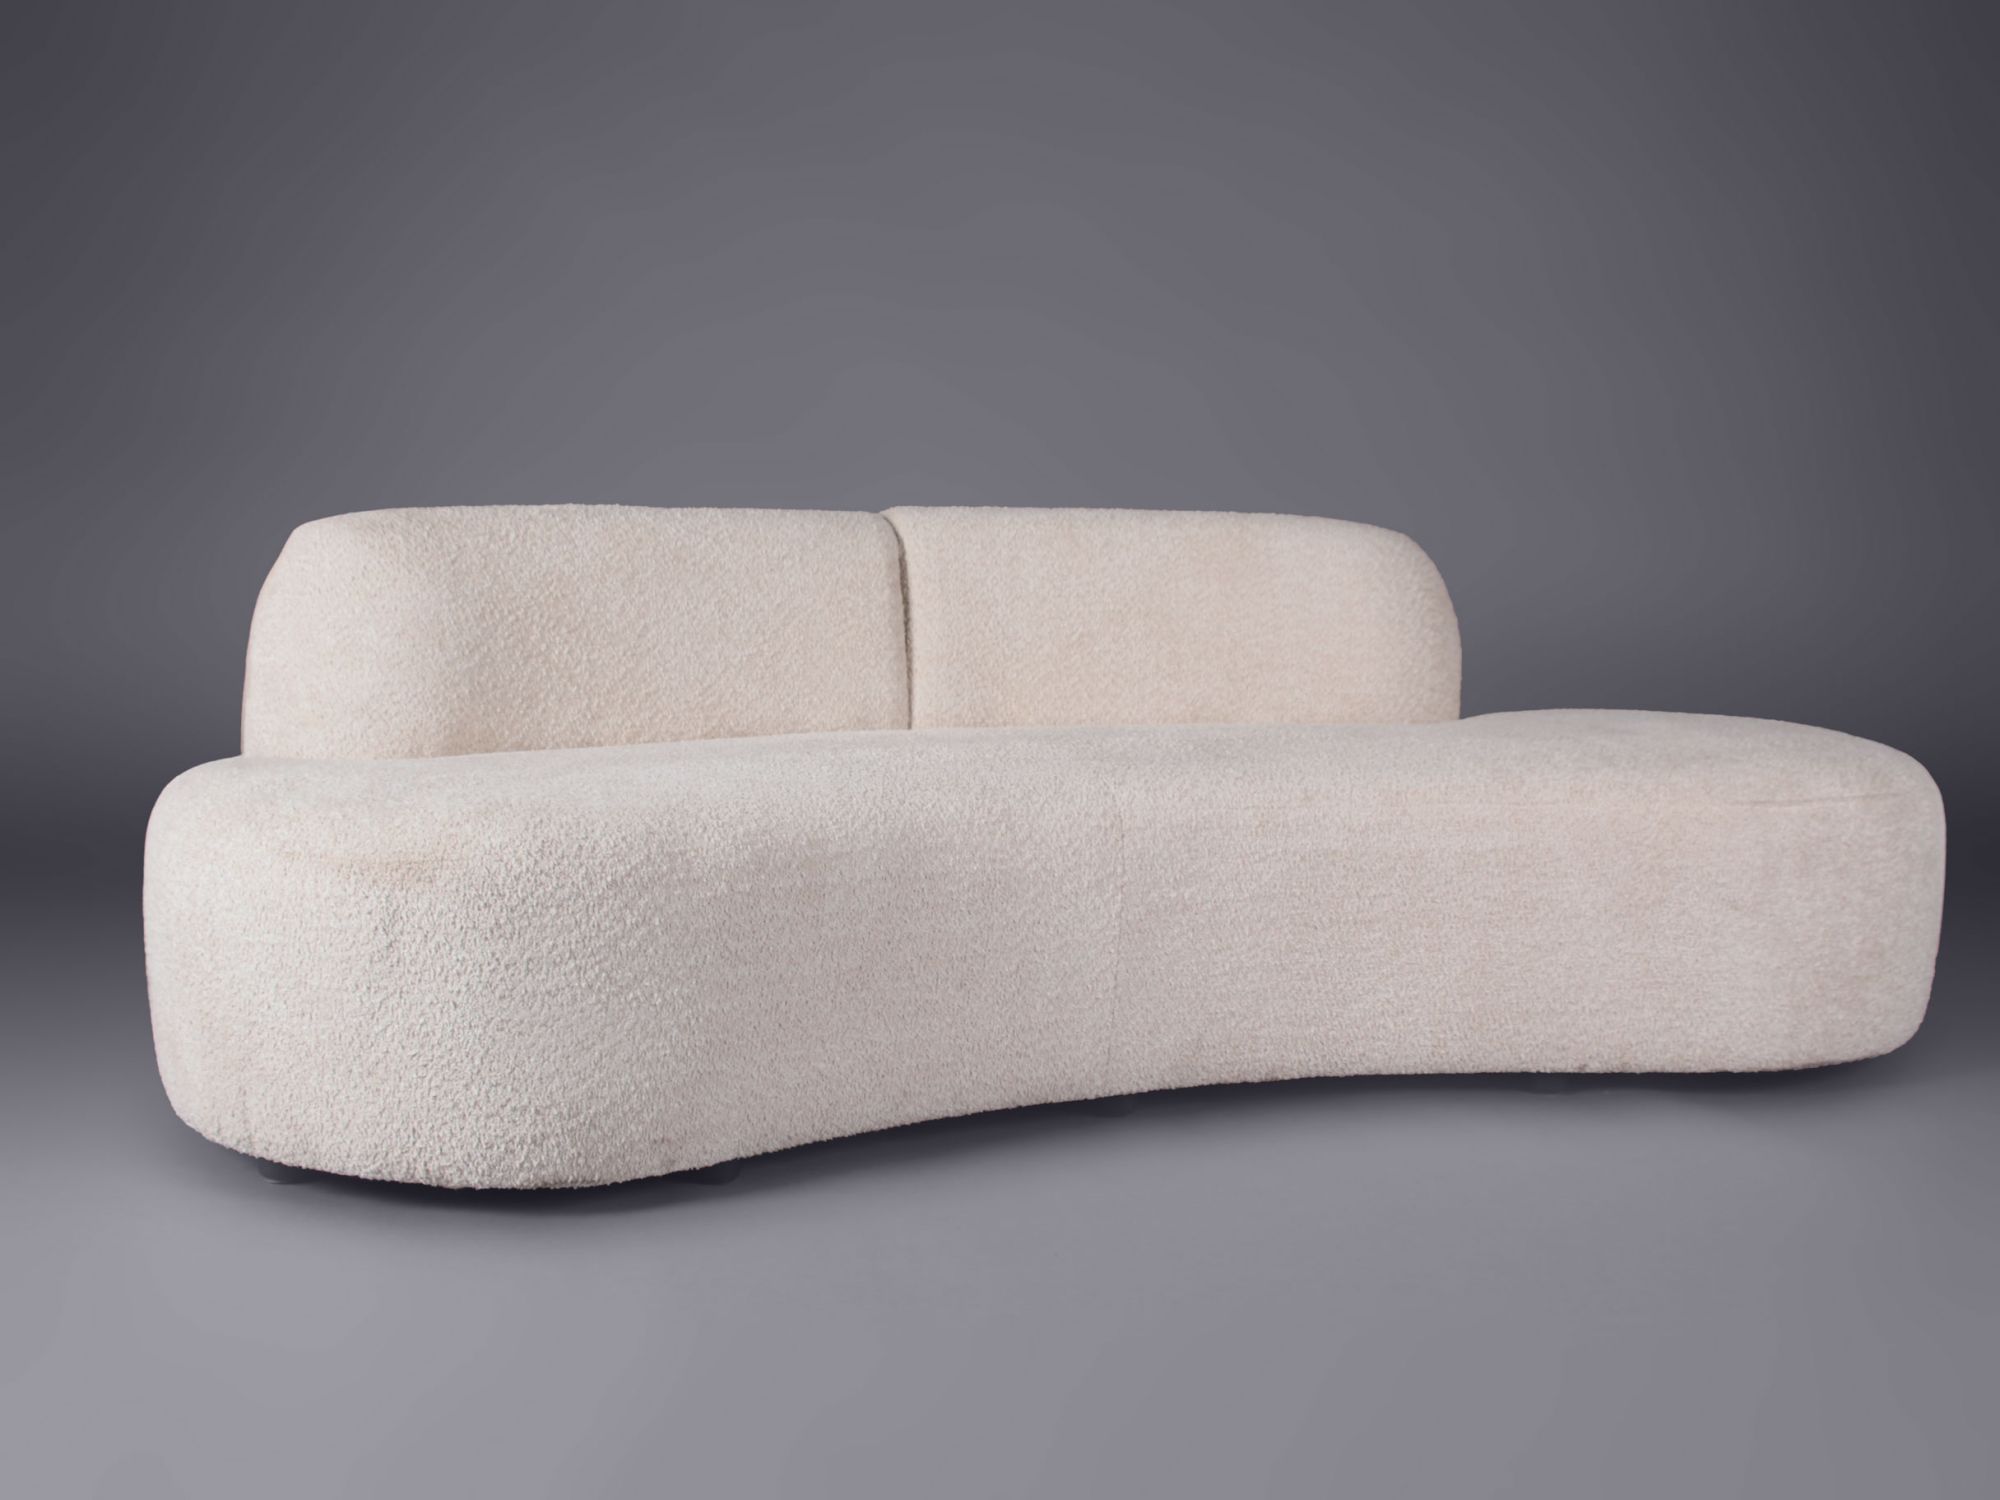 New In Furniture Hire, soft beige sofa rental